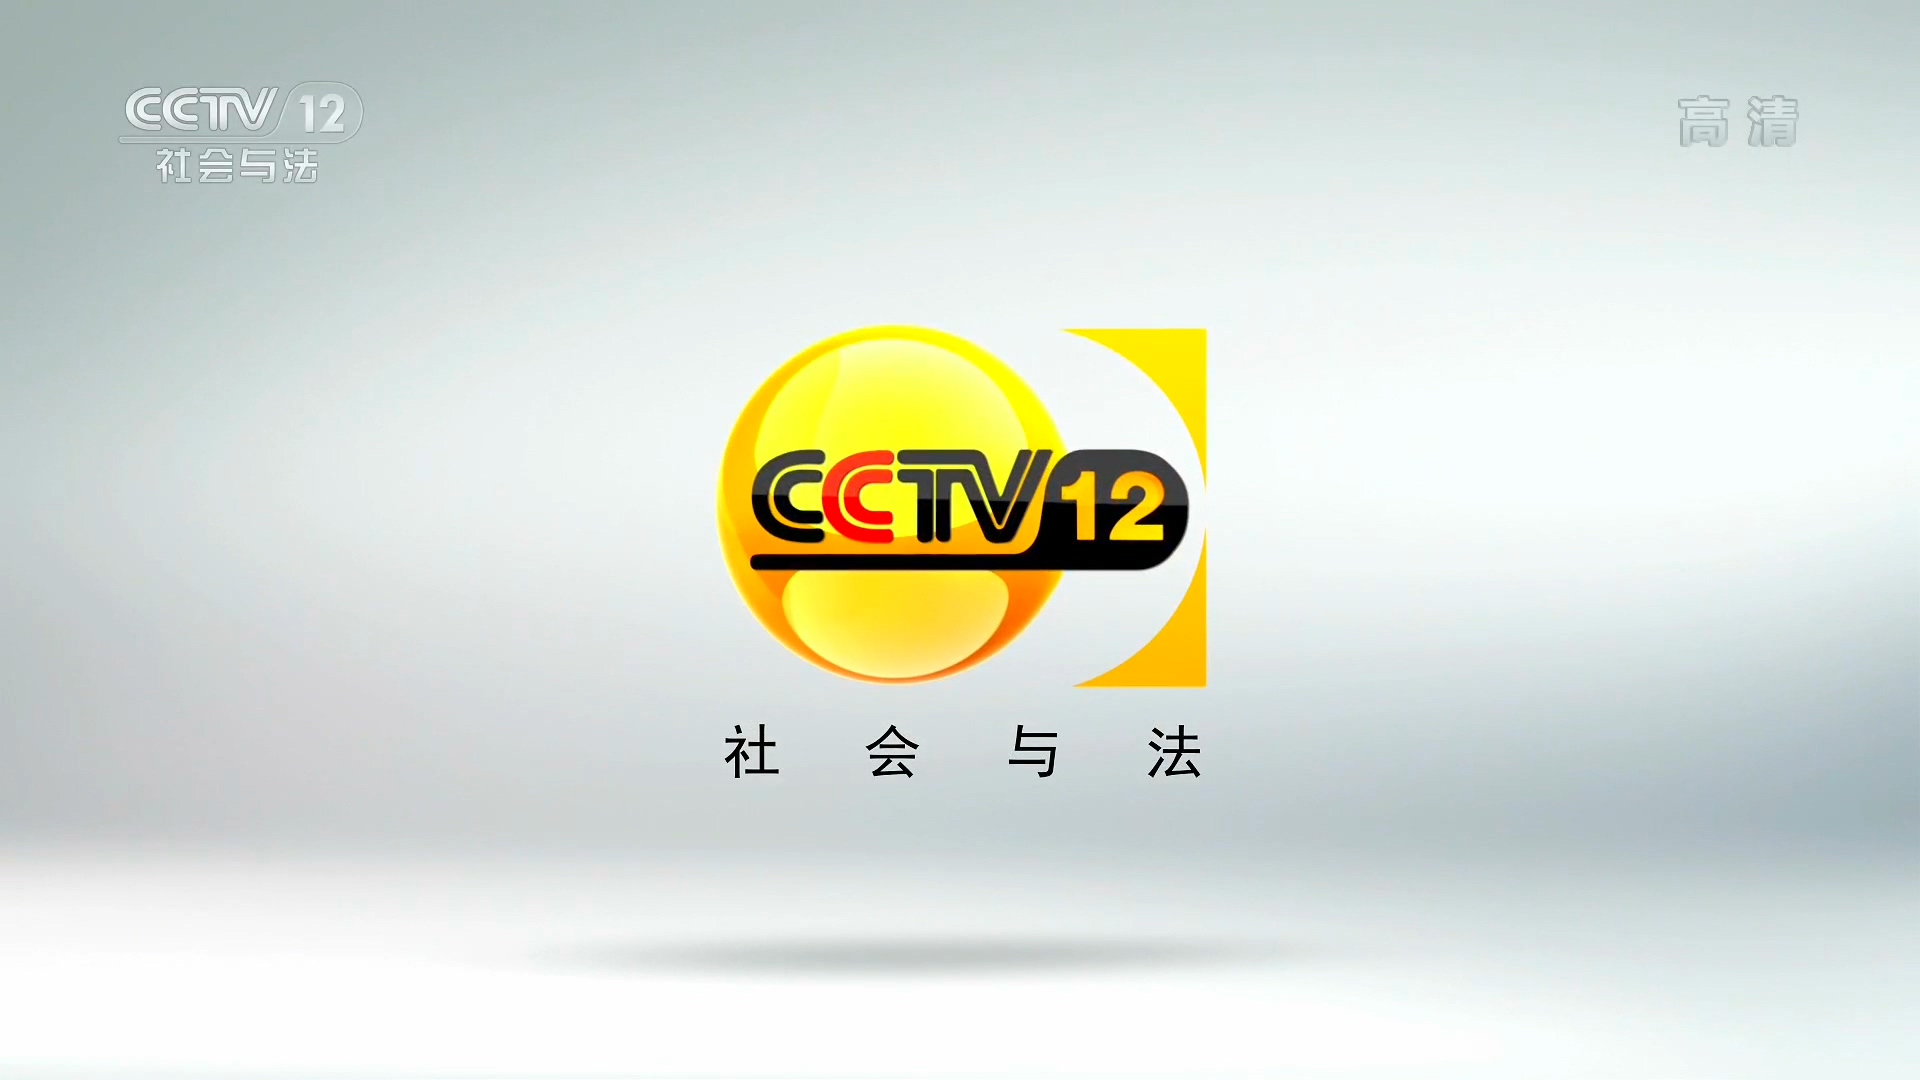 中央電視台社會與法頻道(CCTV12)